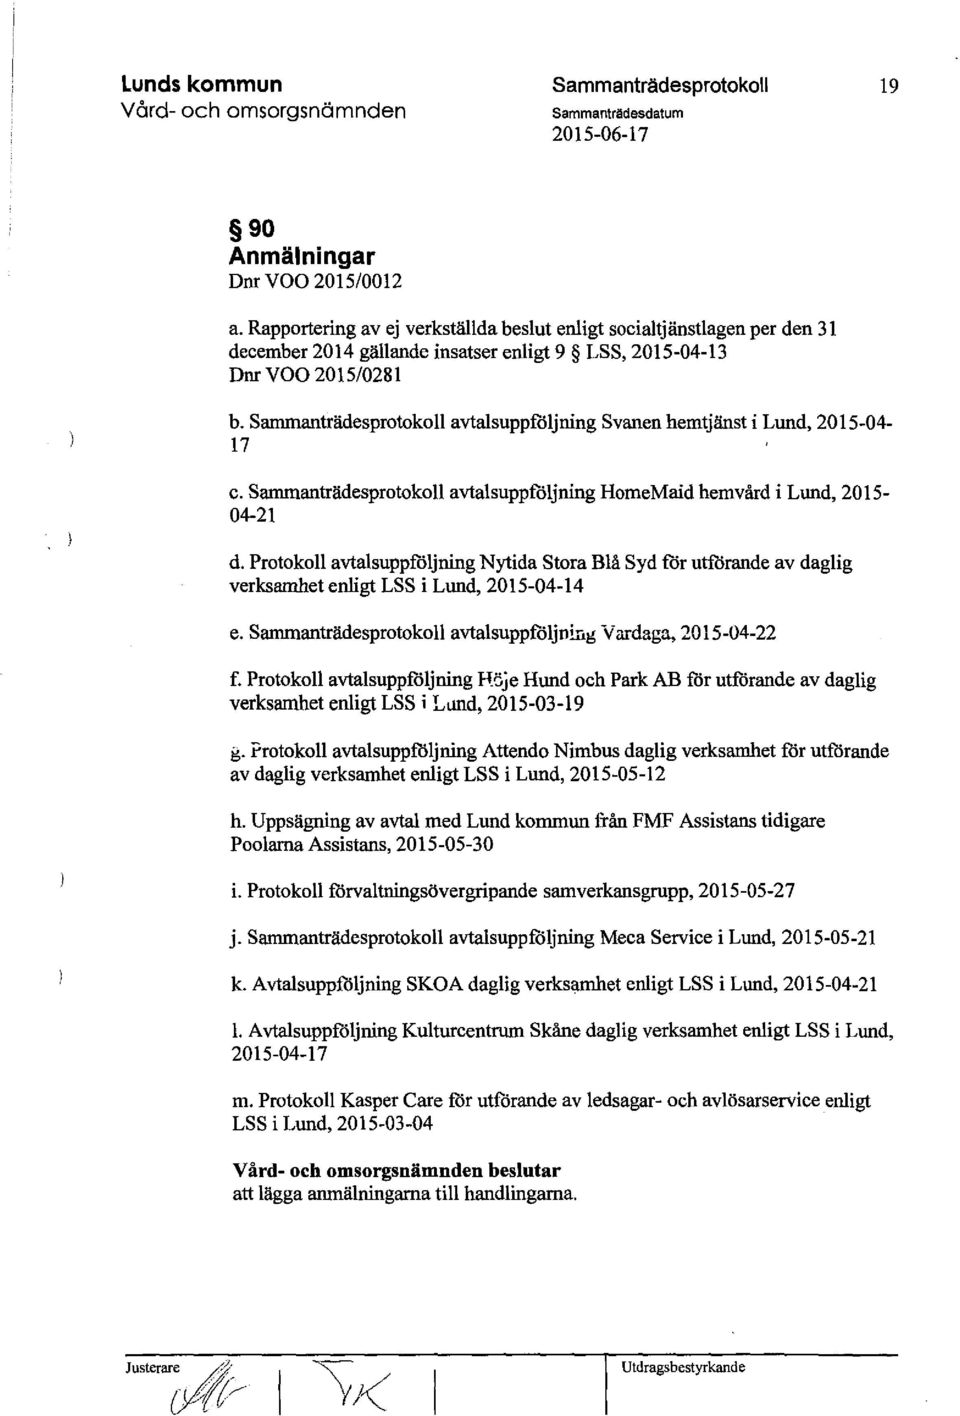 Protokoll avtalsuppföljning Nytida Stora Blå Syd t'ör utförande av daglig verksamhet enligt LSS i Lund, 2015-04-14 e. avtalsuppföljning Vardaga, 2015-04-22 f.